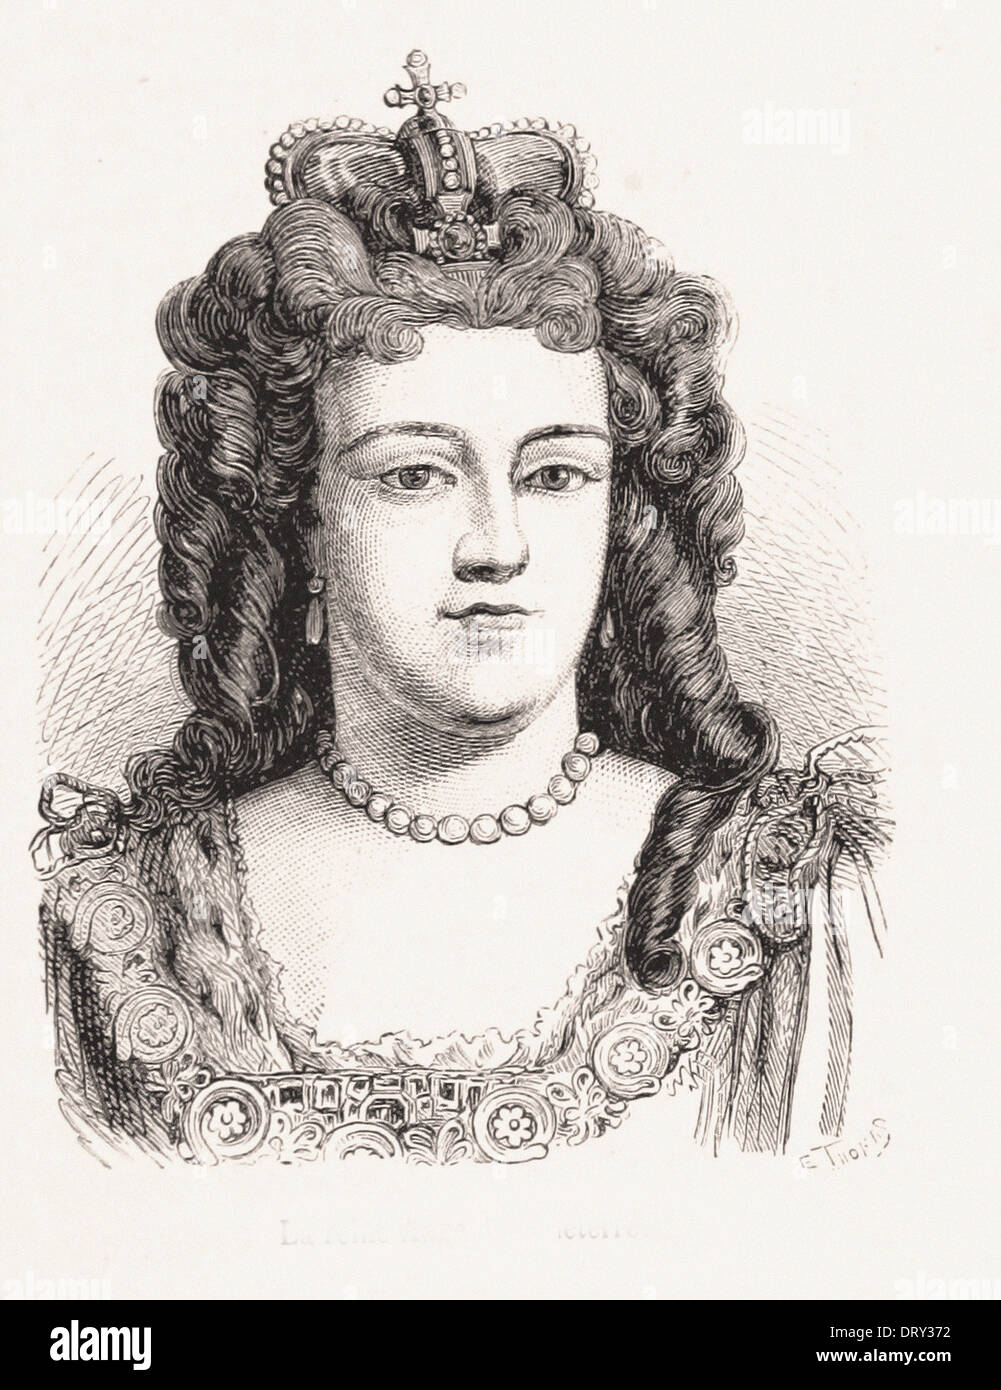 Ritratto di Ann regina dell'Inghilterra - Incisione francese del XIX secolo Foto Stock